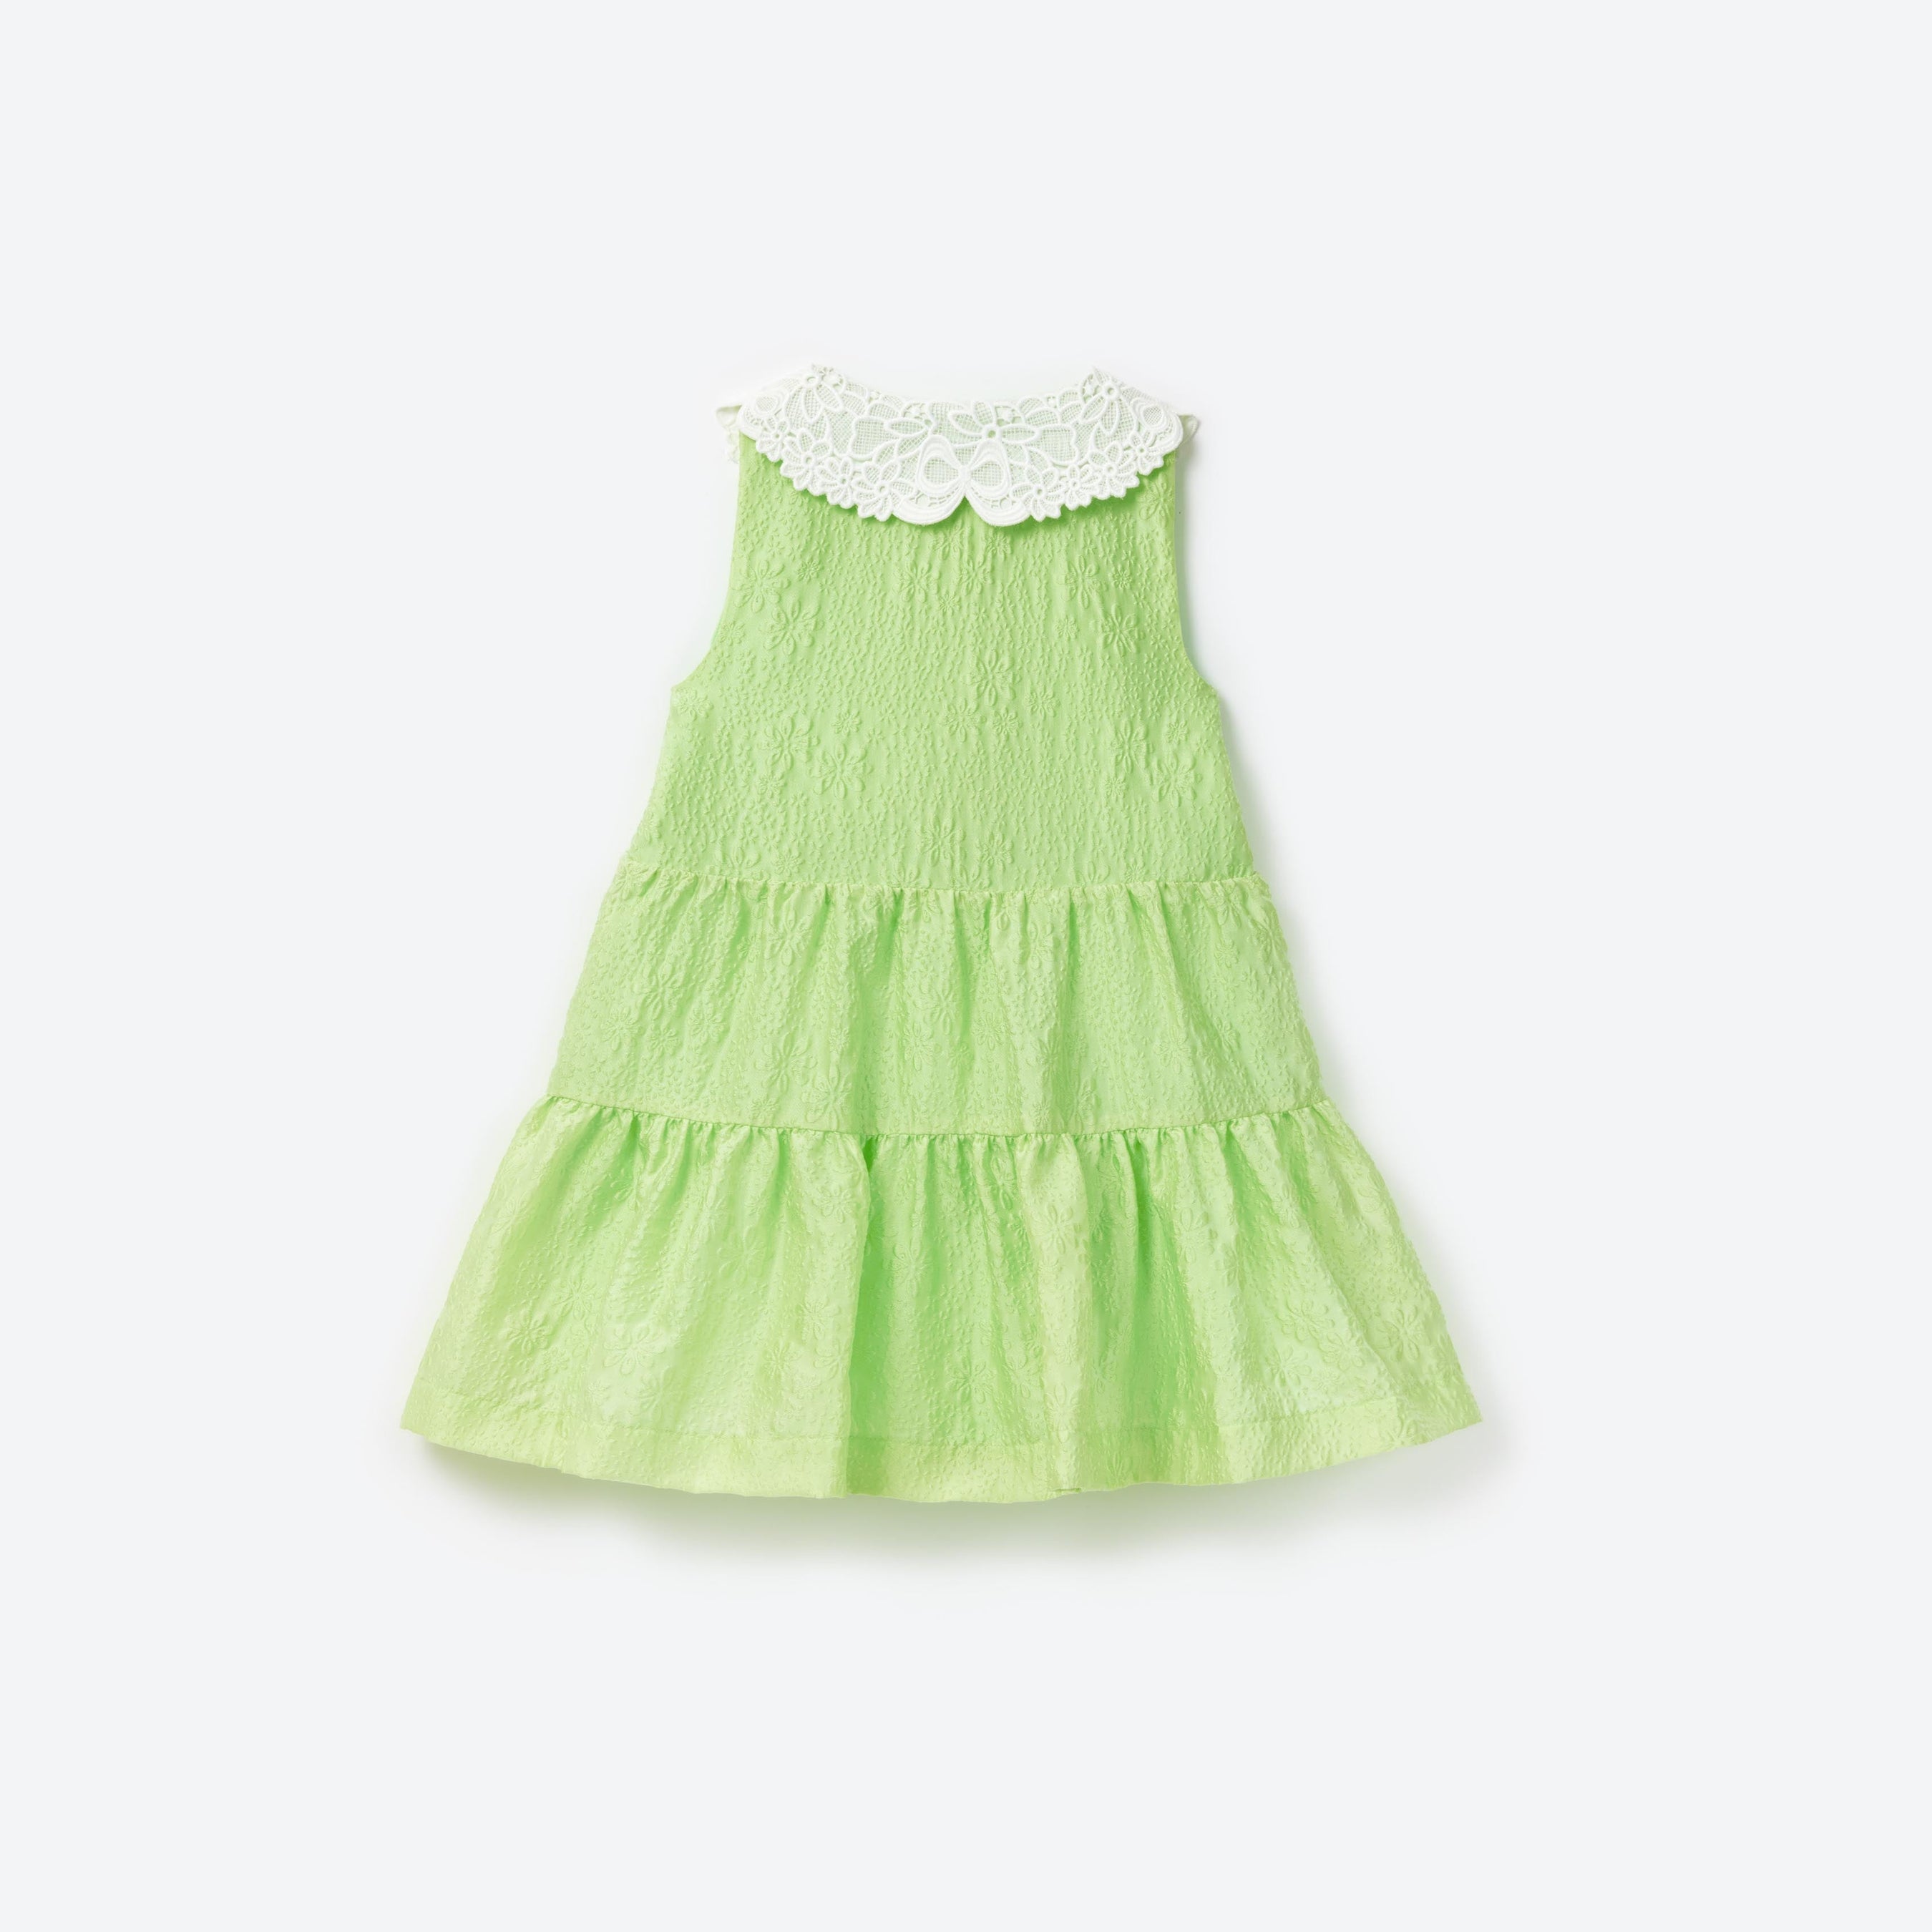 Green Textured Cotton Dress